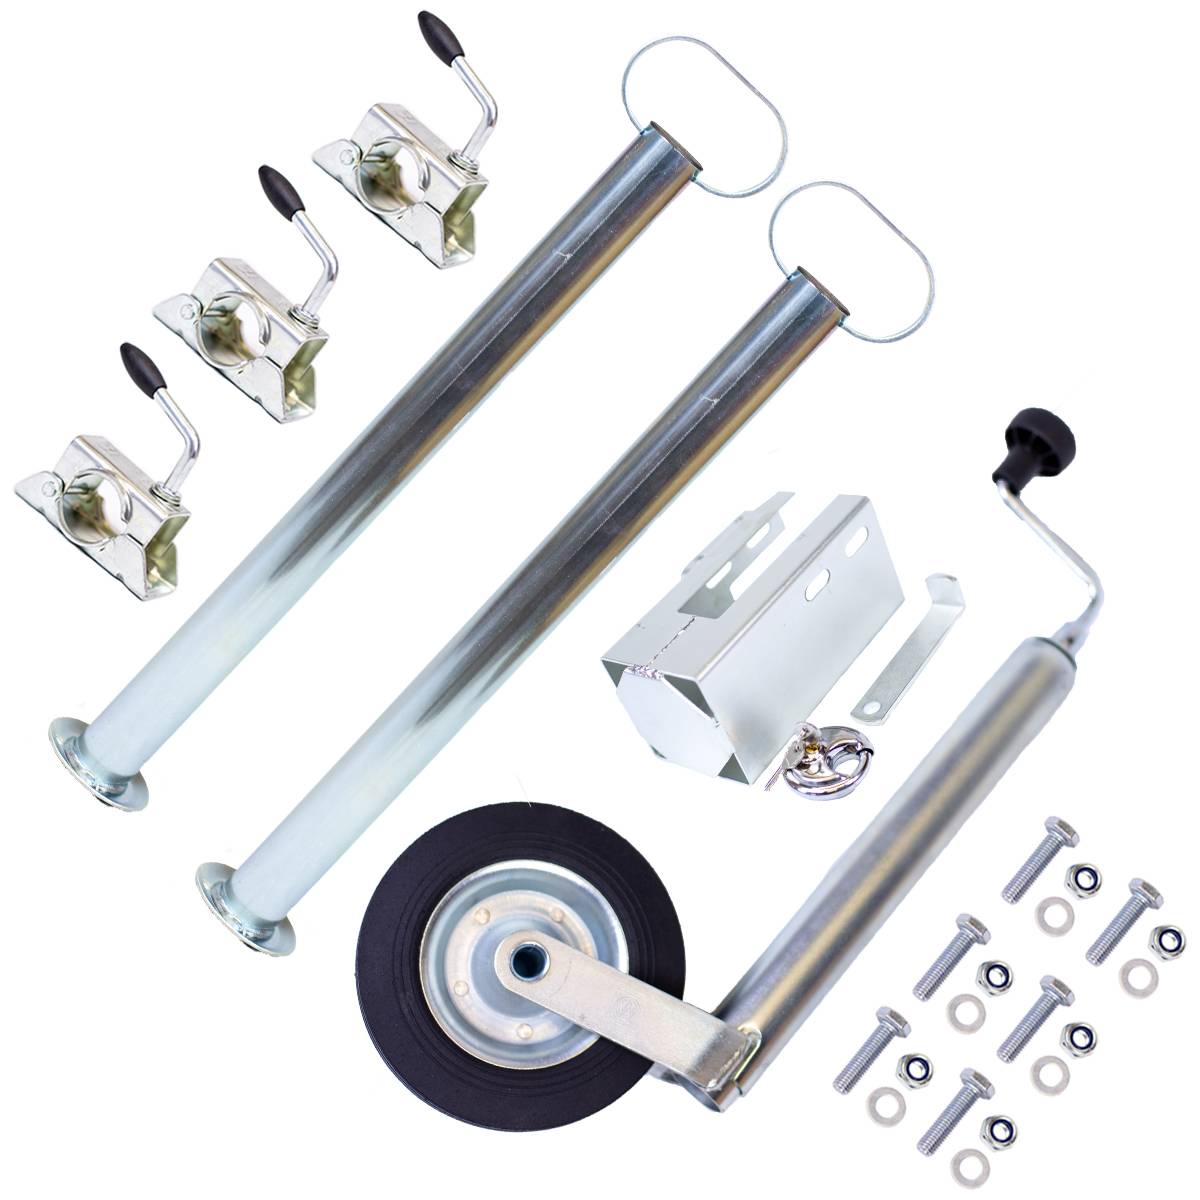 Acheter Support à pince pour remorque, roue Jockey et Supports de remorque,  support de roue Jockey pour remorque de 48mm de diamètre